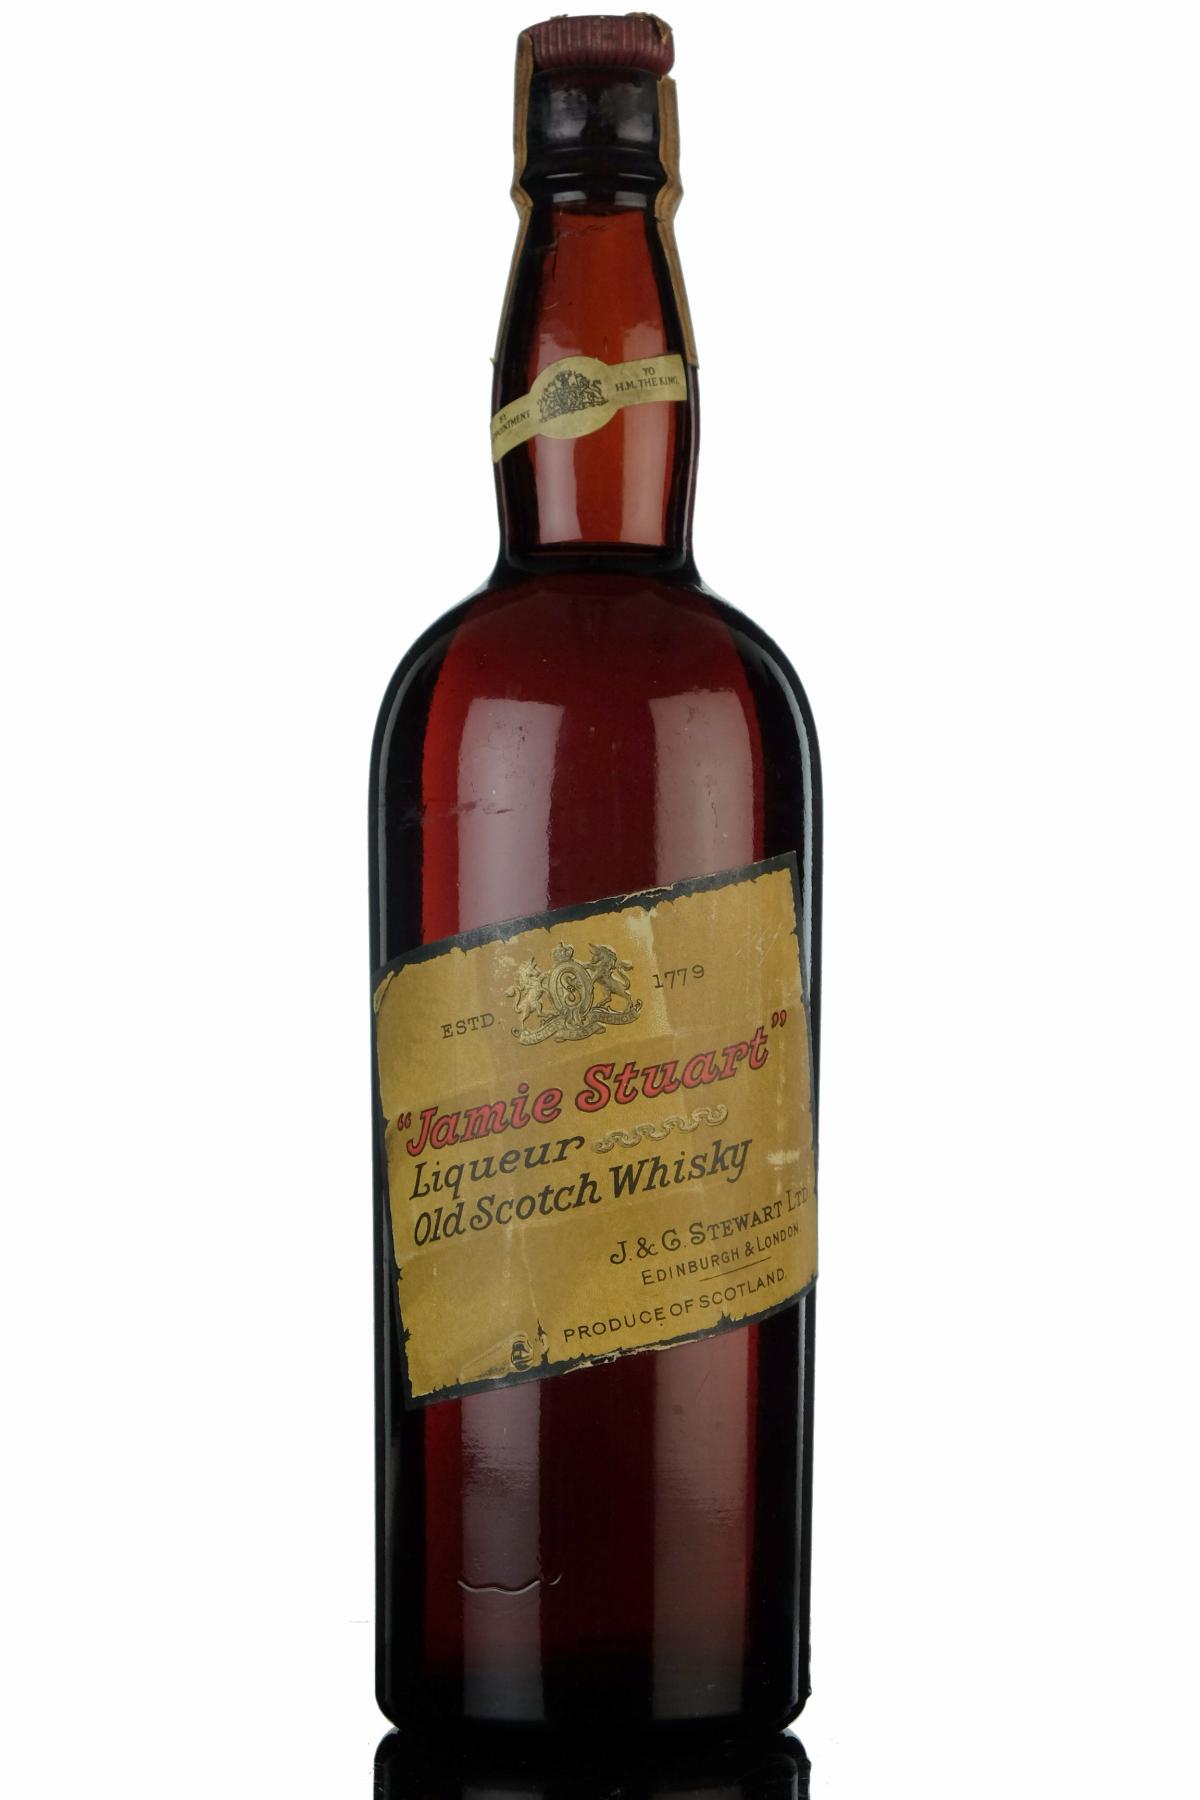 Jamie Stuart Liqueur Old Scotch Whisky - Late 1930s